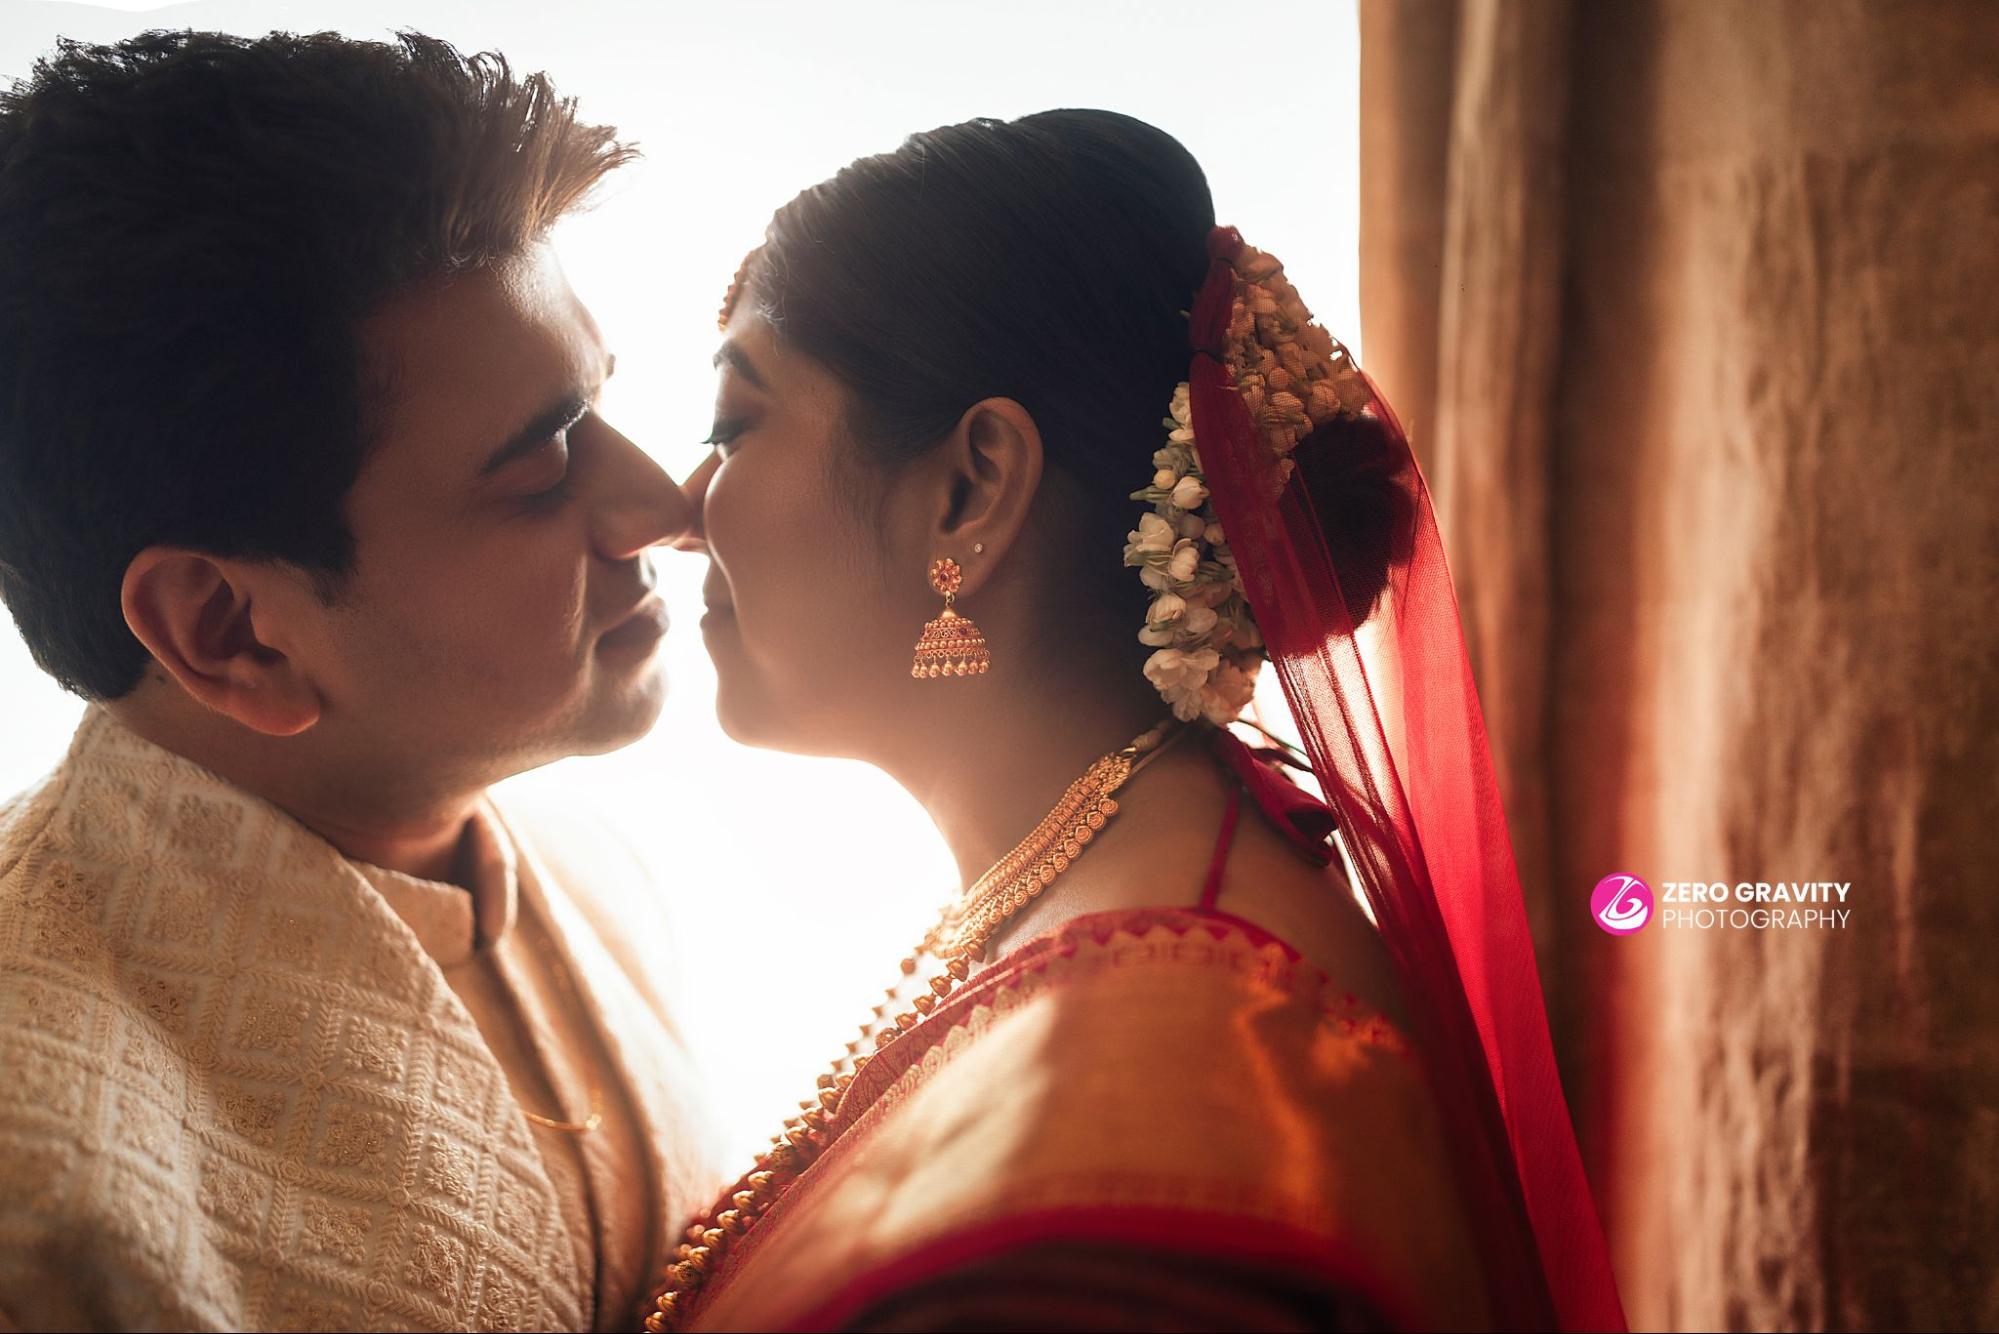 Wedding couple posts | Indian wedding couple photography, Indian bride  photography poses, Bride photography poses